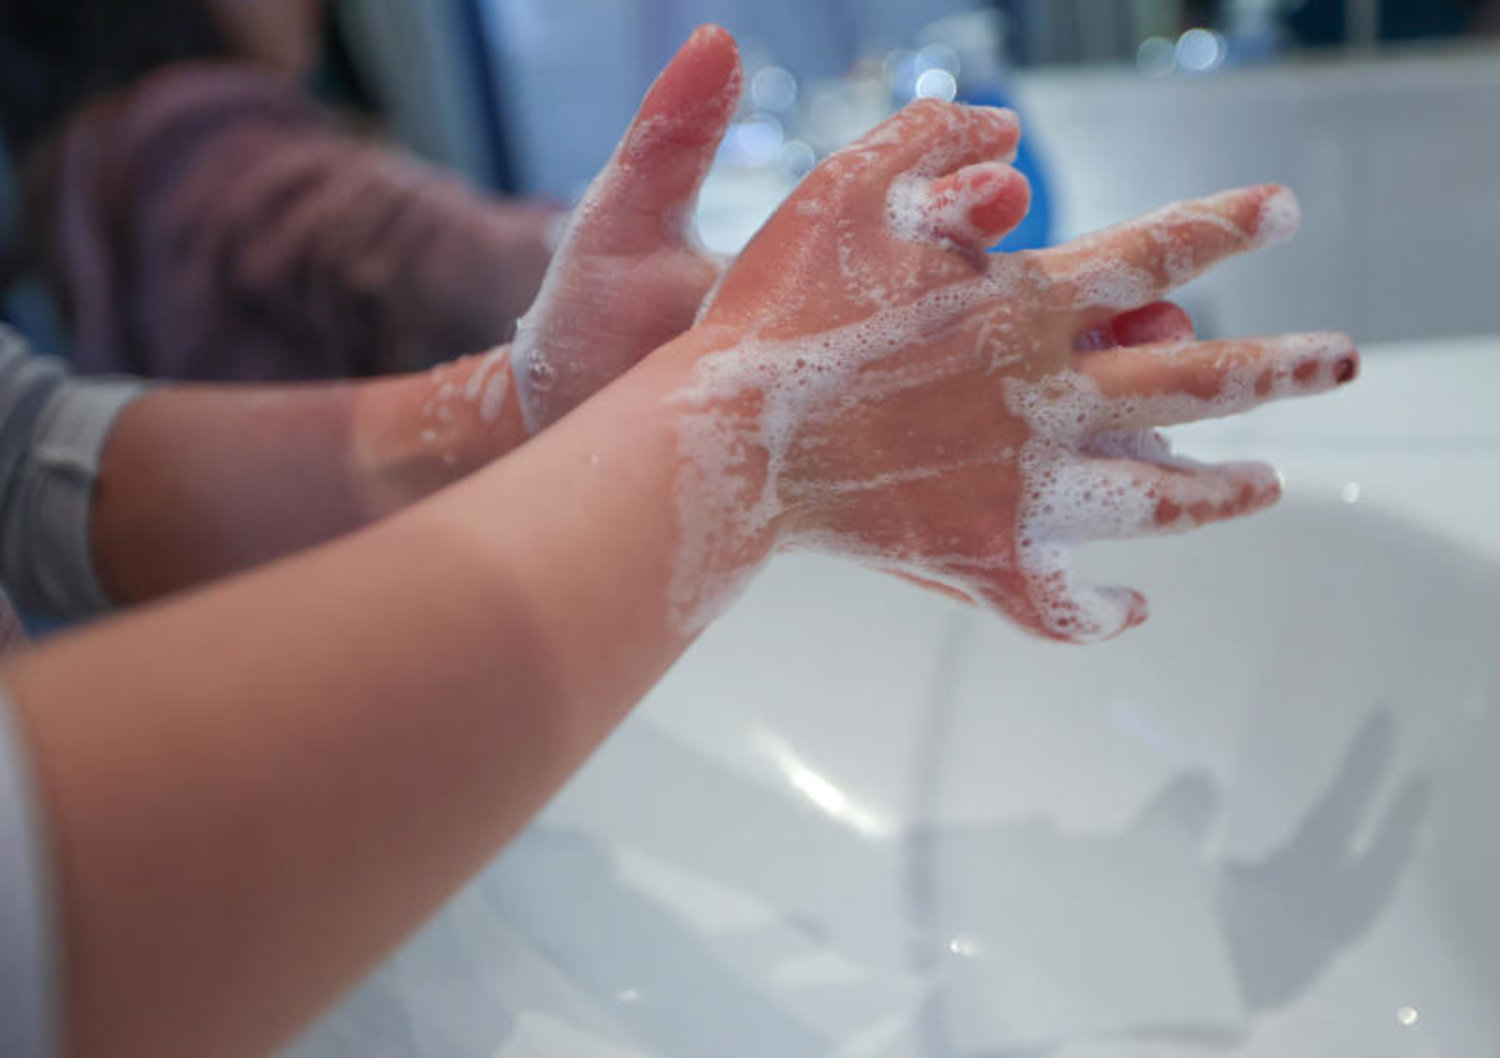 من طرق الوقاية من الحمى القرمزية غسل اليدين